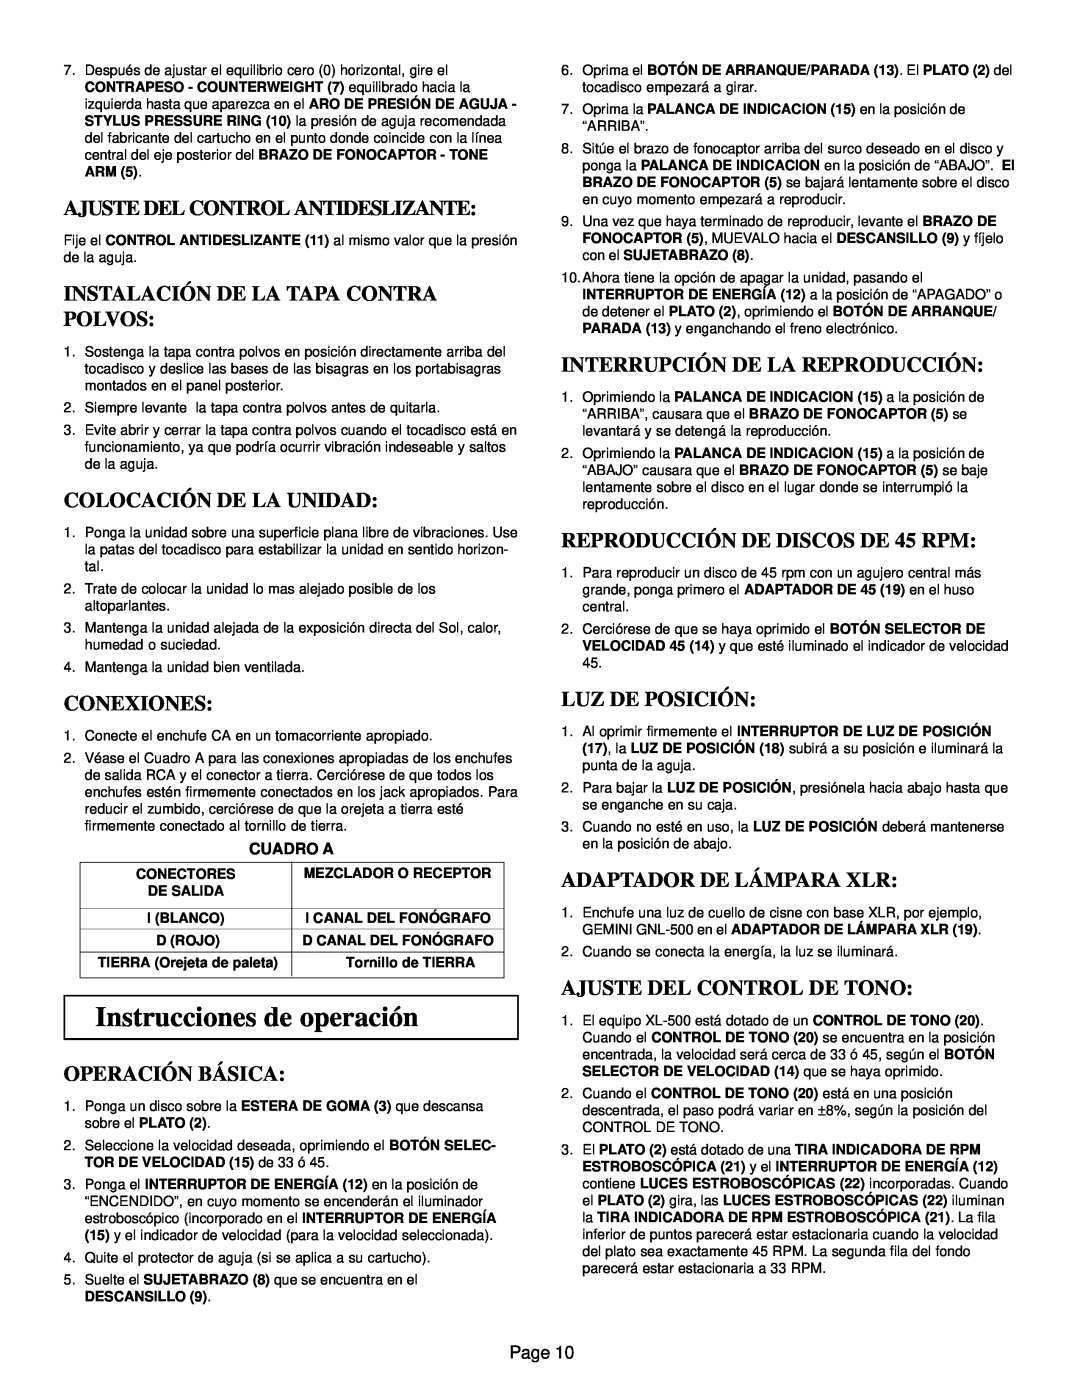 Gemini XL-500 manual Instrucciones de operación, Ajuste Del Control Antideslizante, Instalación De La Tapa Contra Polvos 